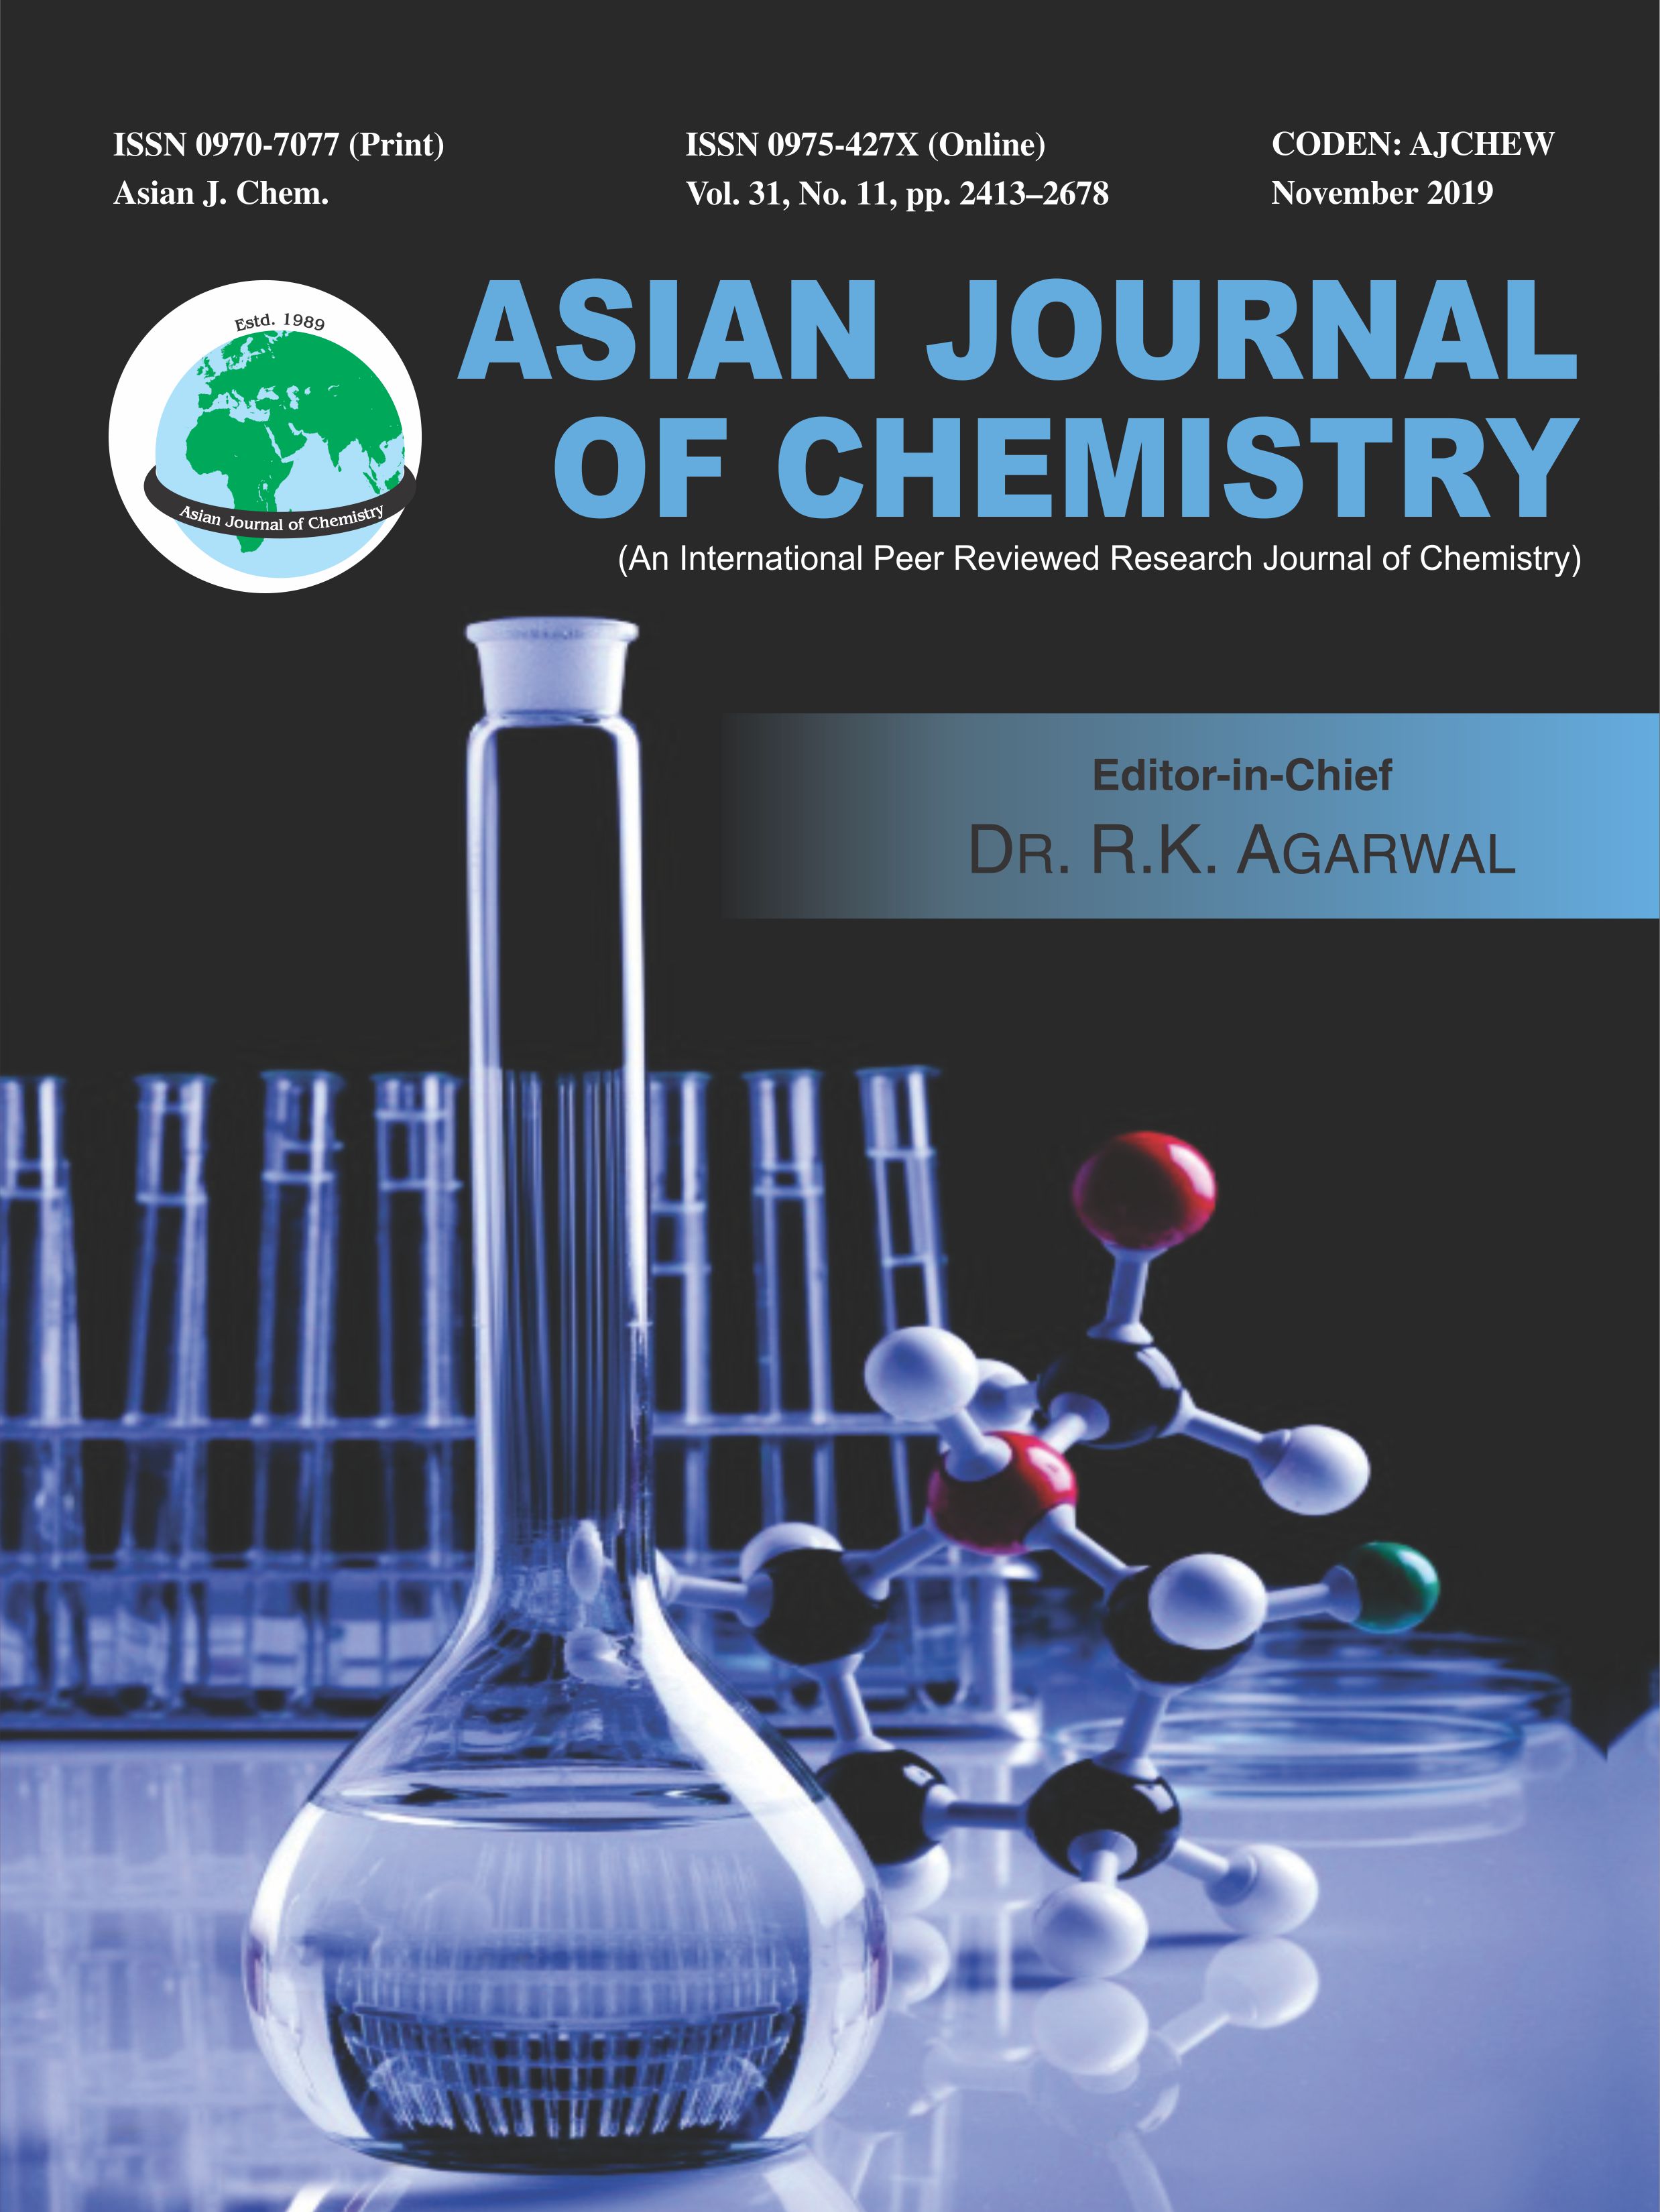 Asian Journal of Chemistry